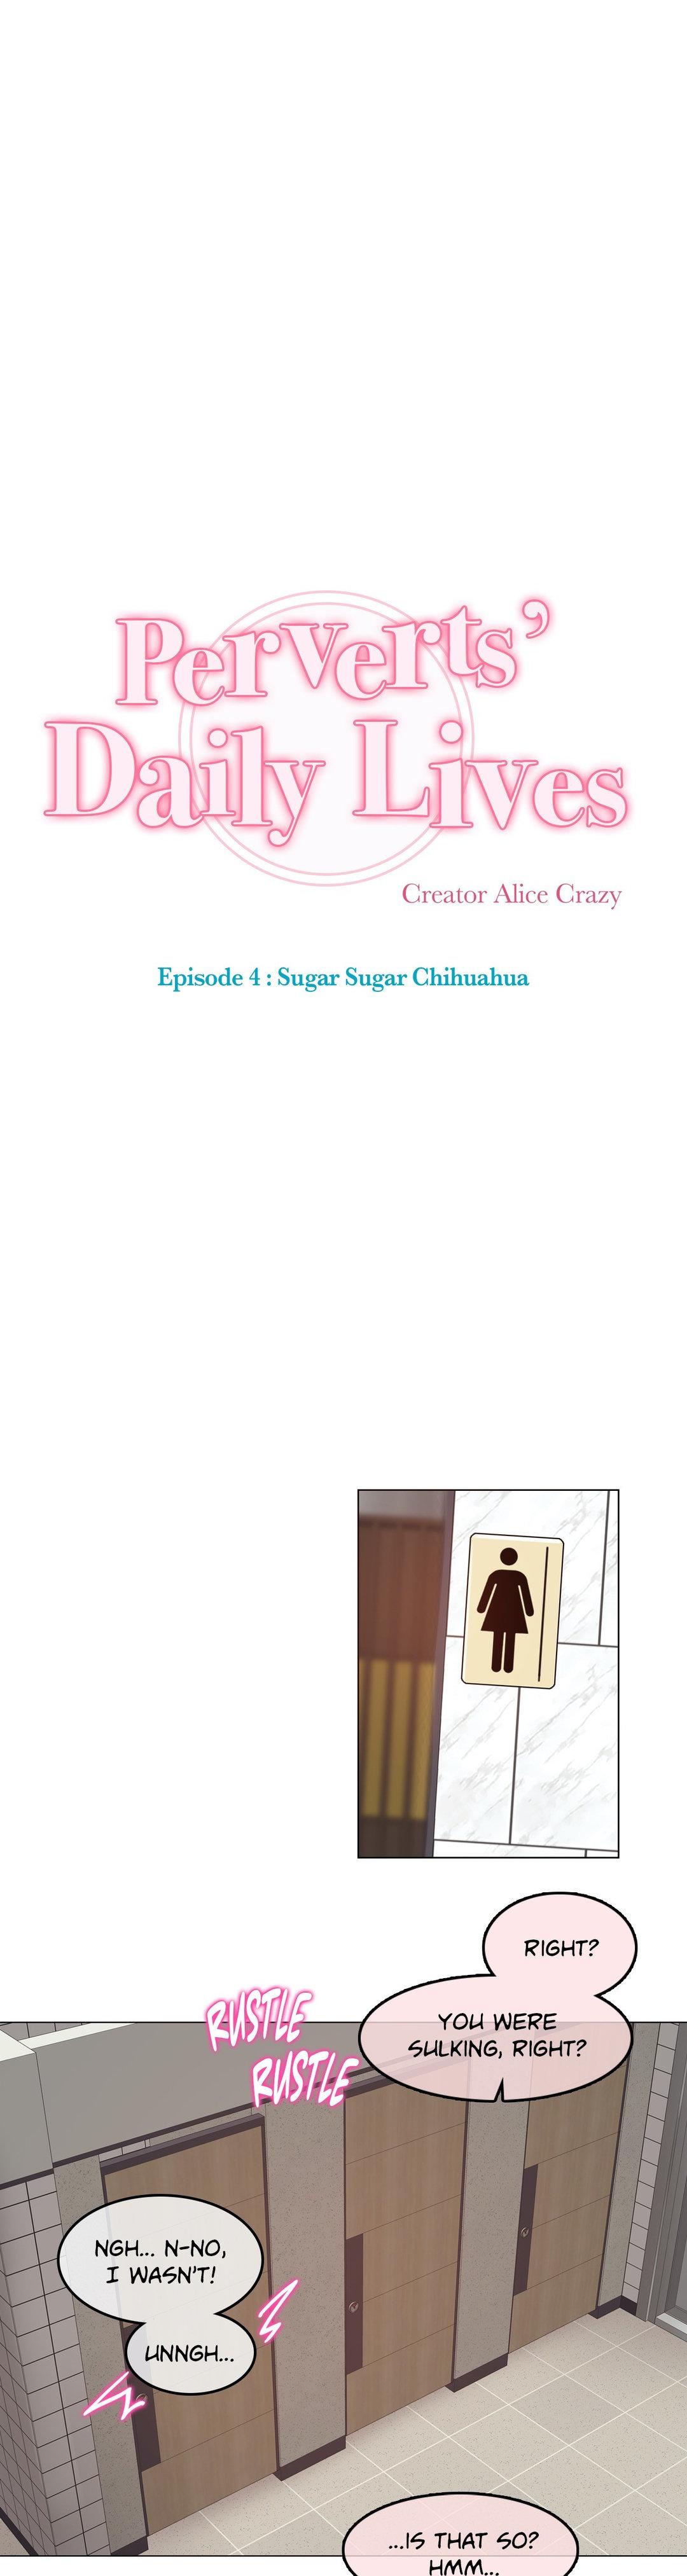 Perverts' Daily Lives Episode 4: Sugar Sugar Chihuahua 103